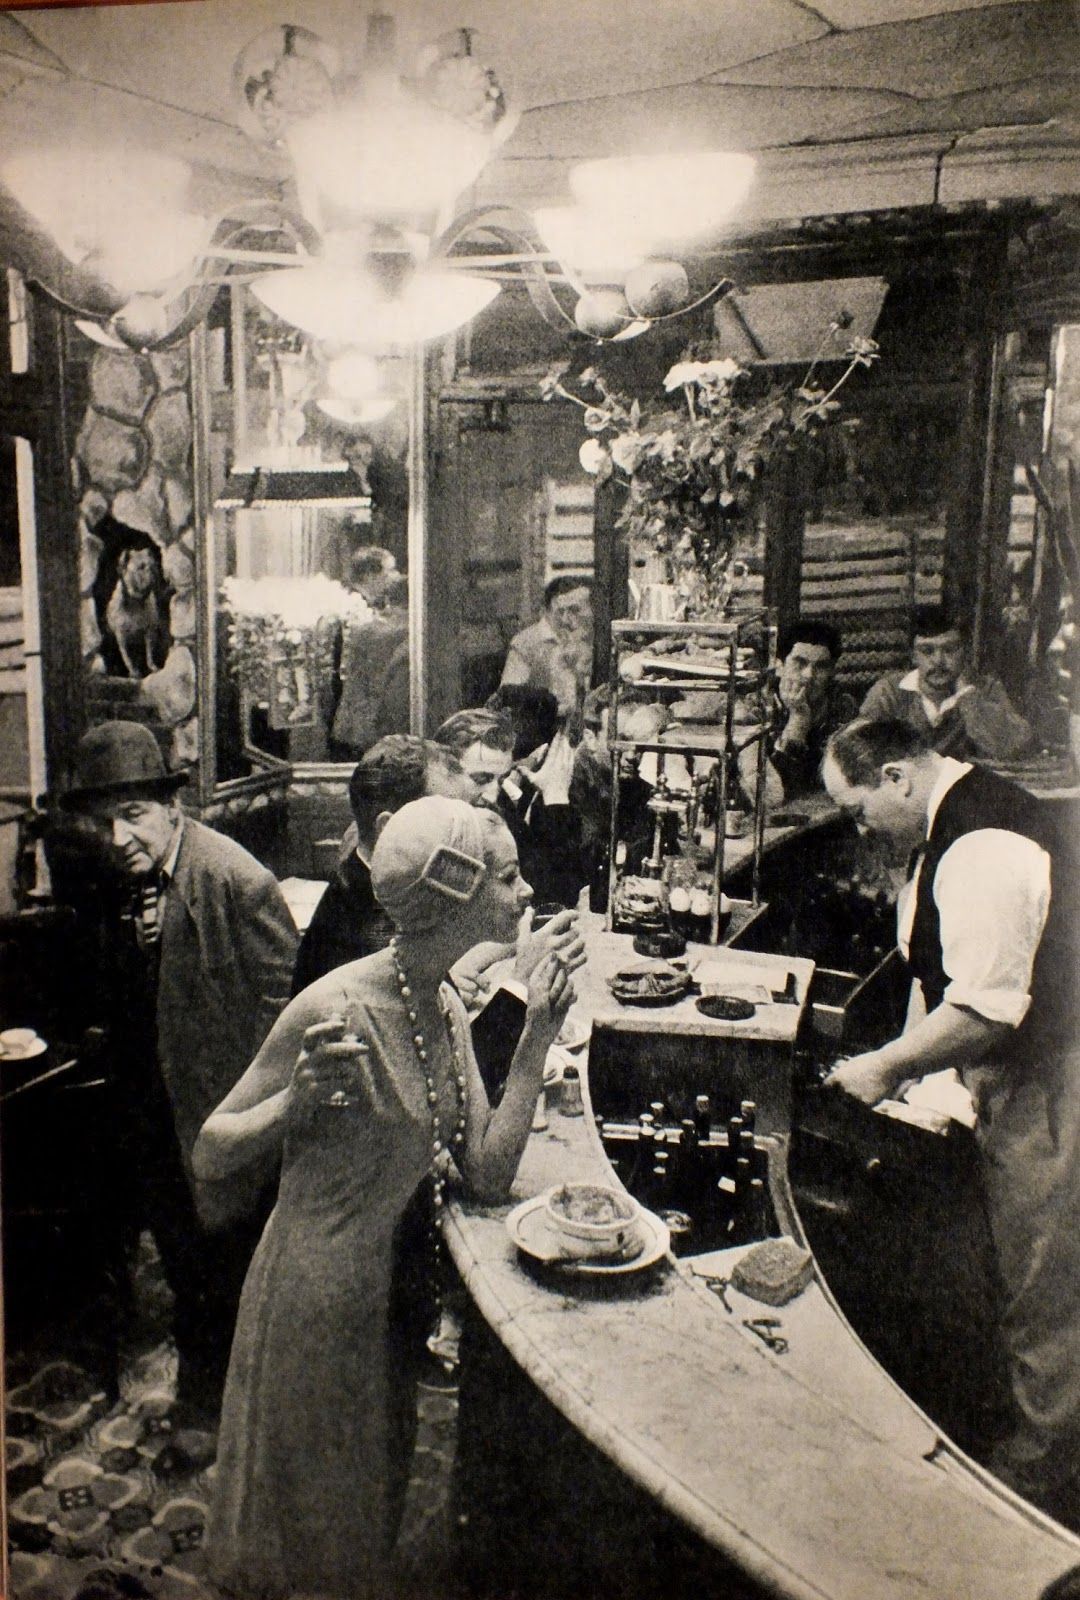 Frank Horvat réalisée dans le restaurant “Le Chien qui fume”, du quartier des Halles à Paris 1957